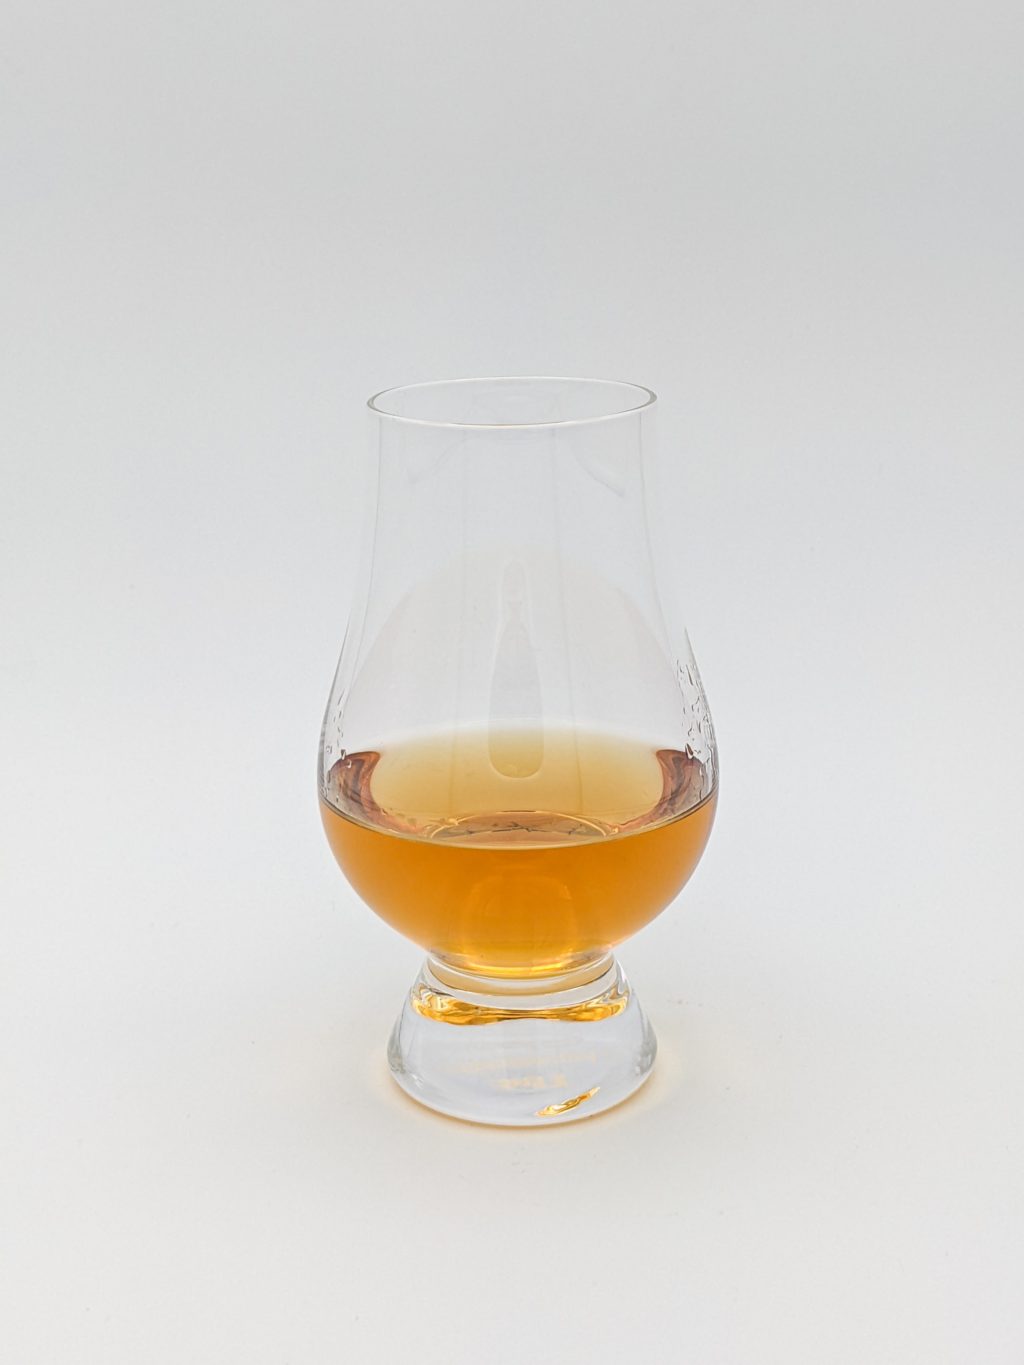 golden liquid in a glencairn glass